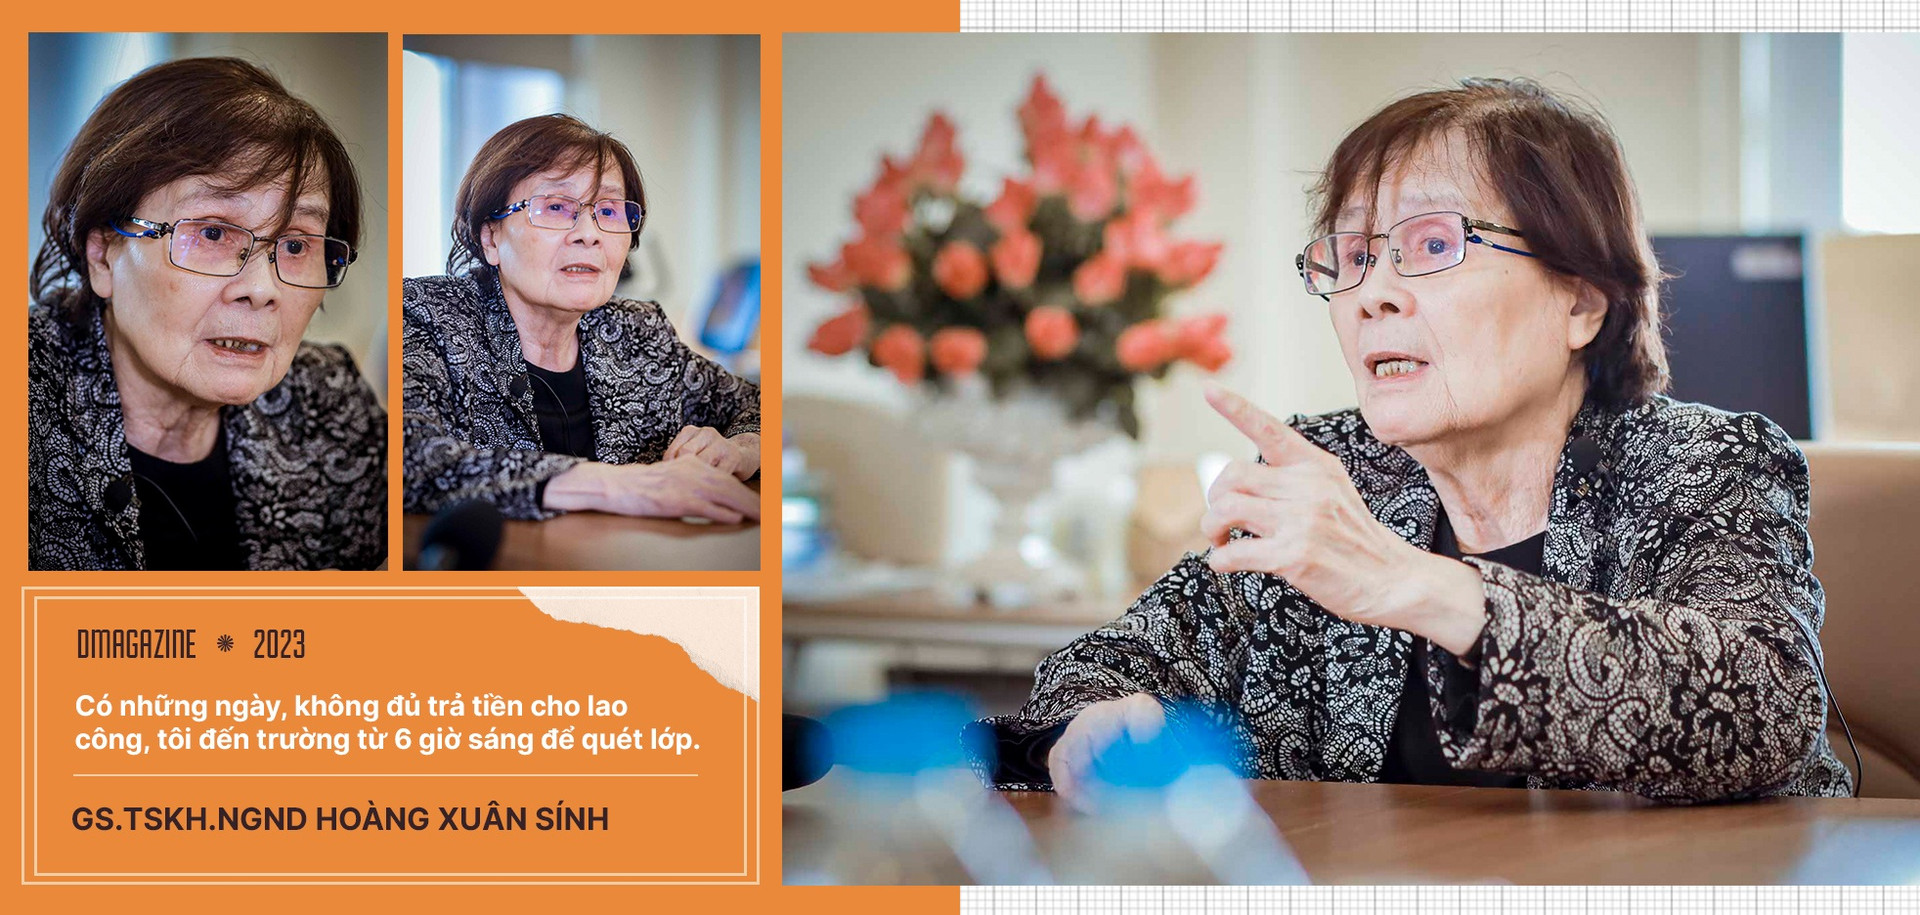 Nữ giáo sư toán đầu tiên của Việt Nam kể chuyện đóng học phí bằng 10kg gạo - 19